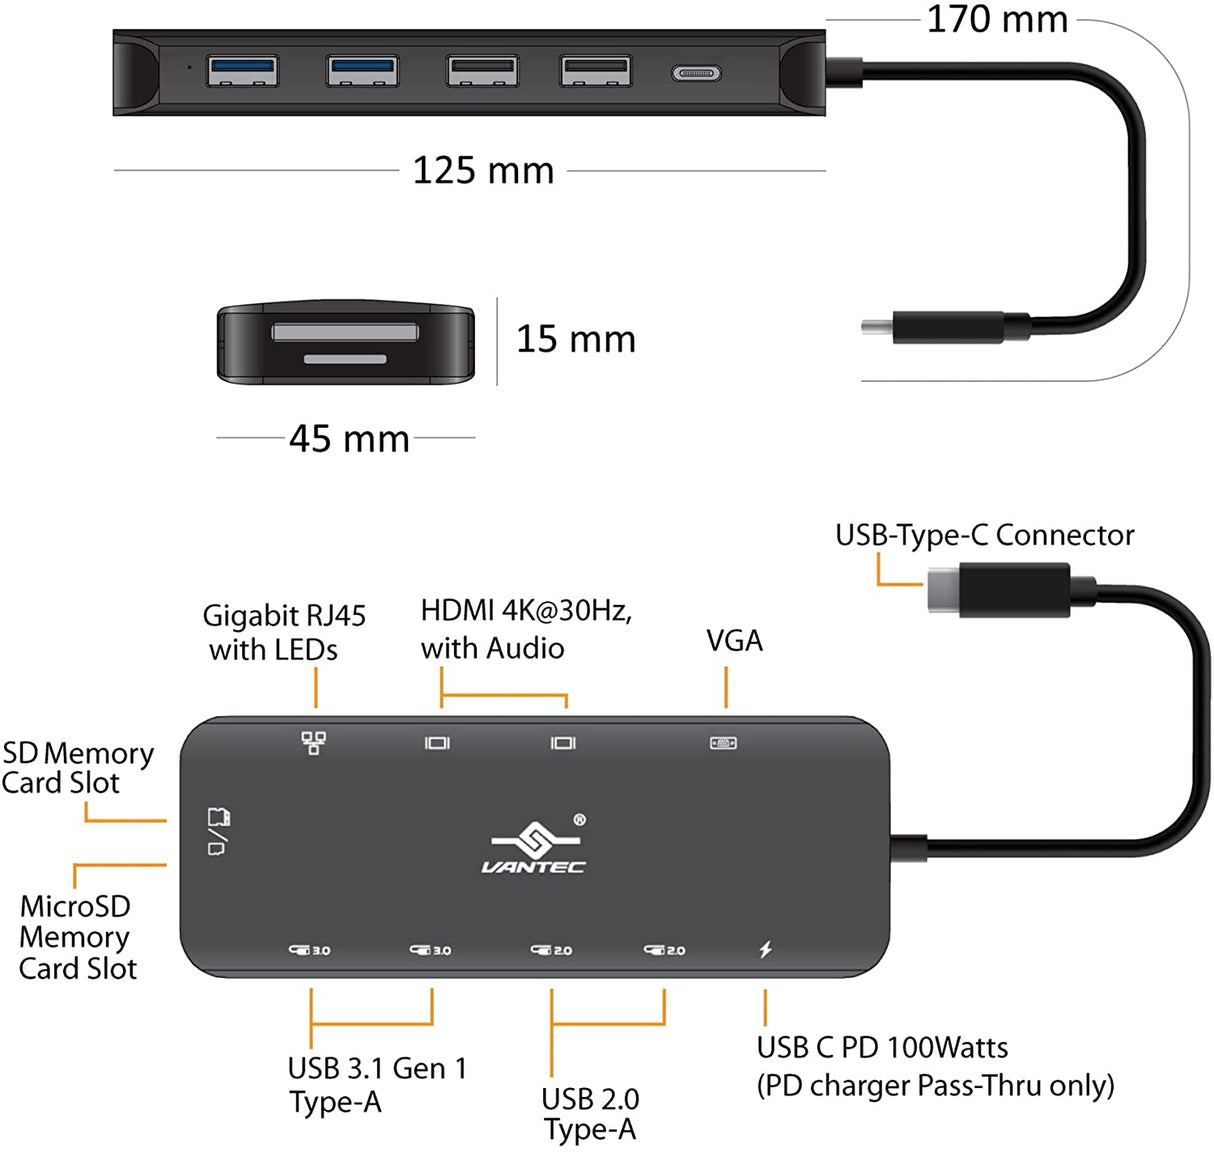 Vantec Link USB C Multi-Function Hub with 2xHDMI 4K, VGA, Gigabit, SD, MicroSD, 2xUSB 3.1, 2xUSB 2.0, PD 100W, USB C (CB-CU302MDSH)